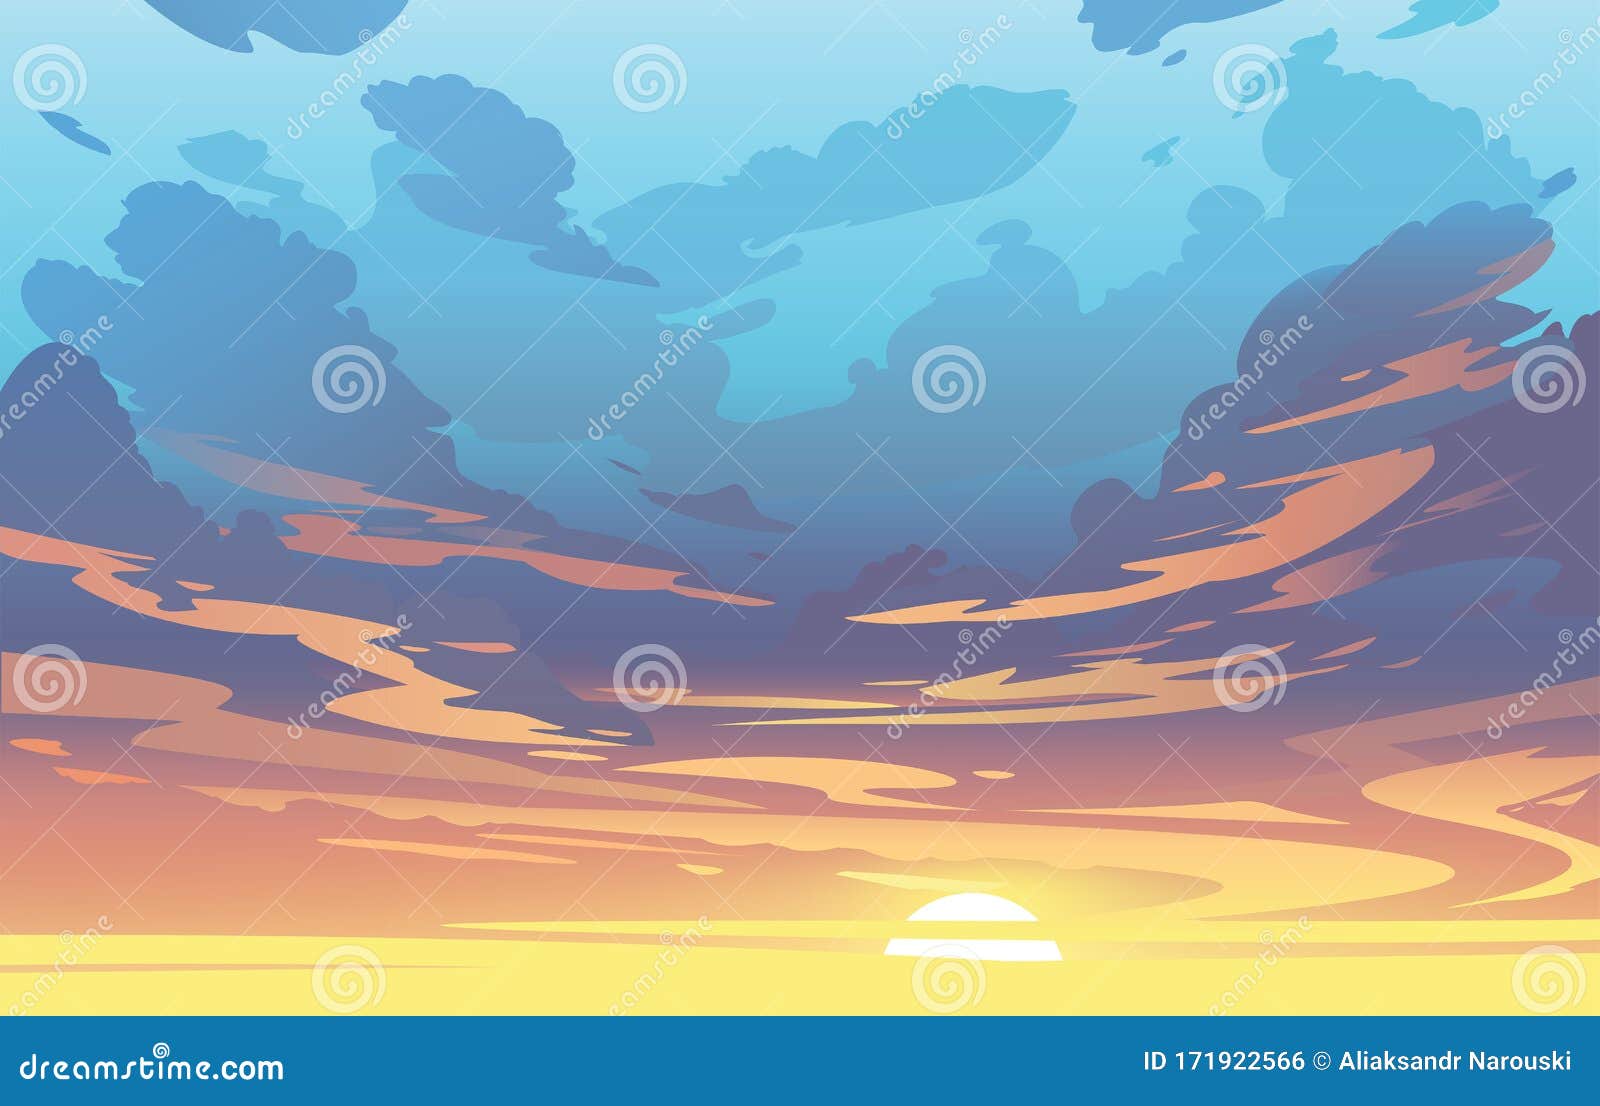 Thưởng thức không gian đầy màu sắc của bầu trời hoàng hôn trong hình ảnh vector Mây Trời Hoàng Hôn Đầy Màu Sắc. Với độ chi tiết và sắc nét, bạn sẽ như được đắm chìm vào cảnh trời tuyệt đẹp đó.